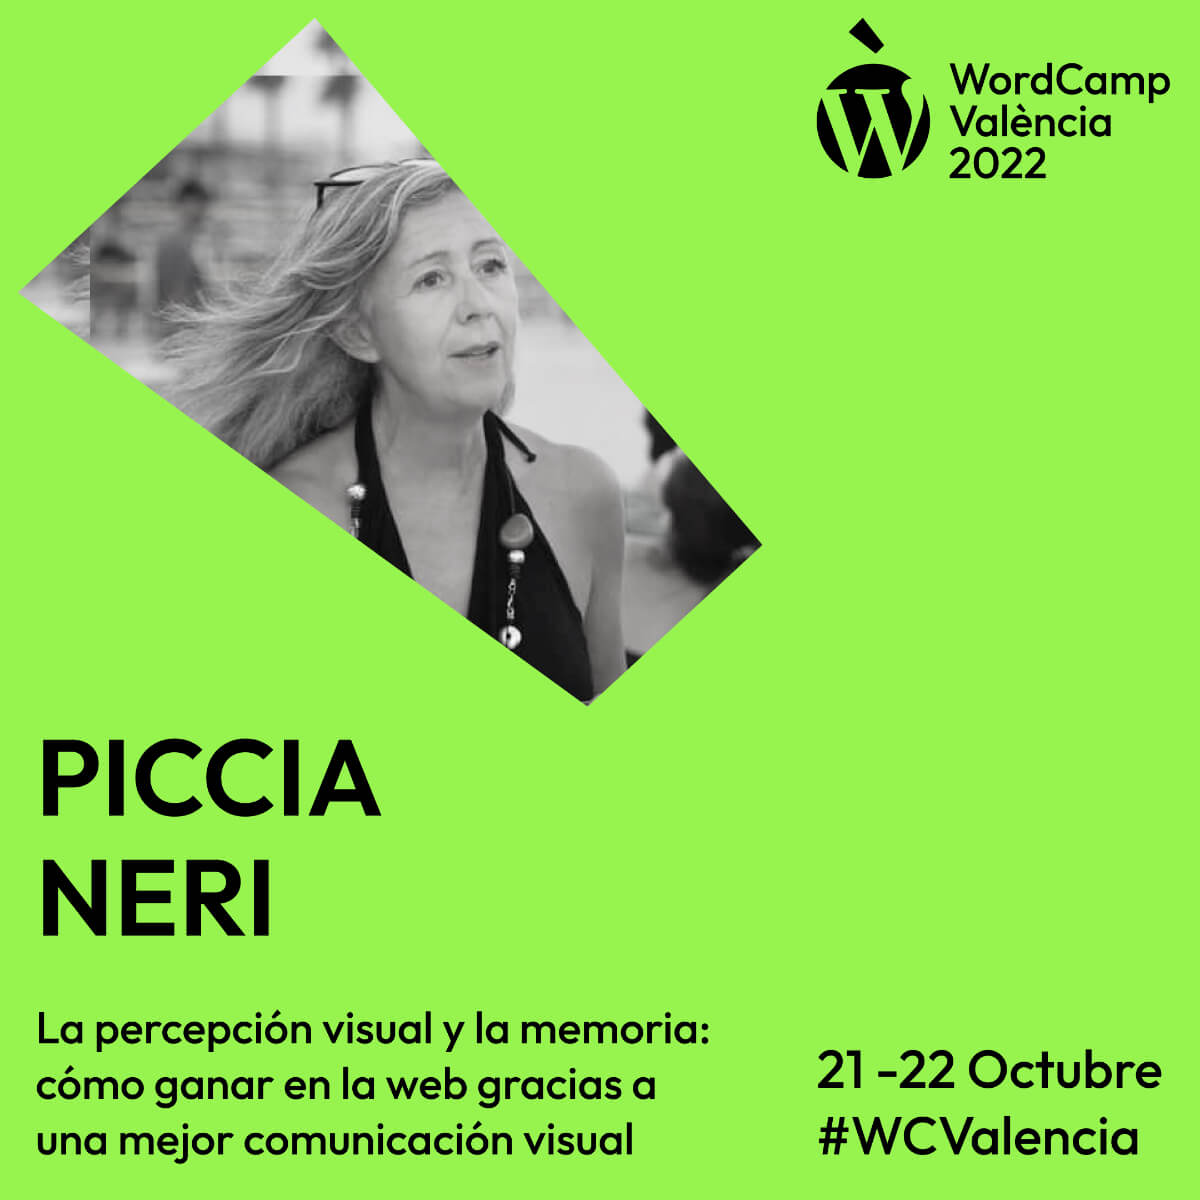 Piccia Neri WCVLC 2022